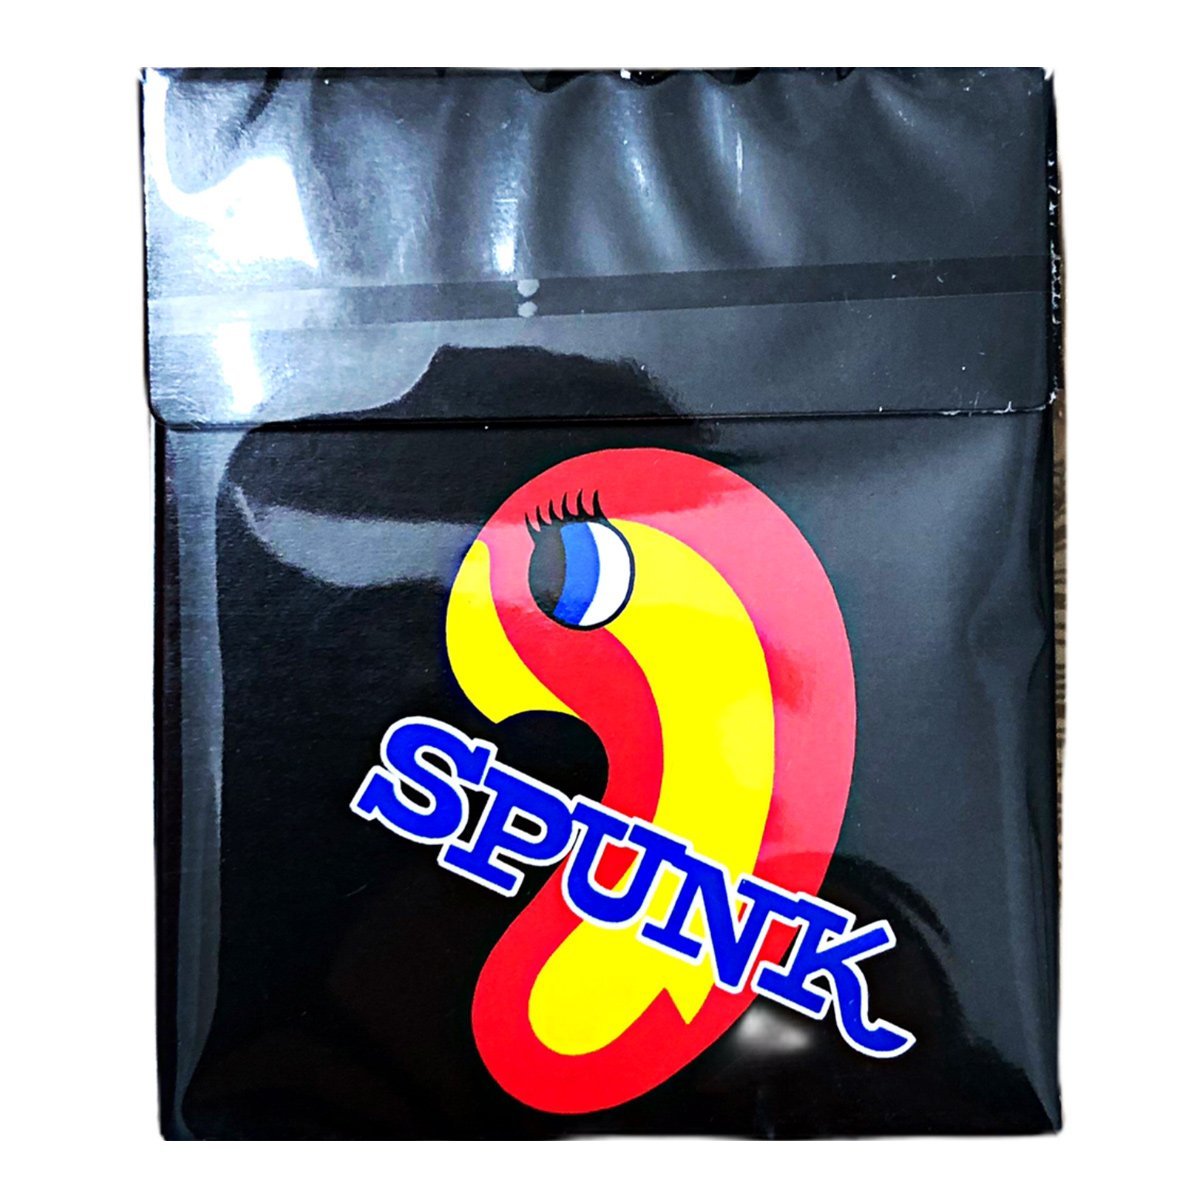 Spunk (20g) 1